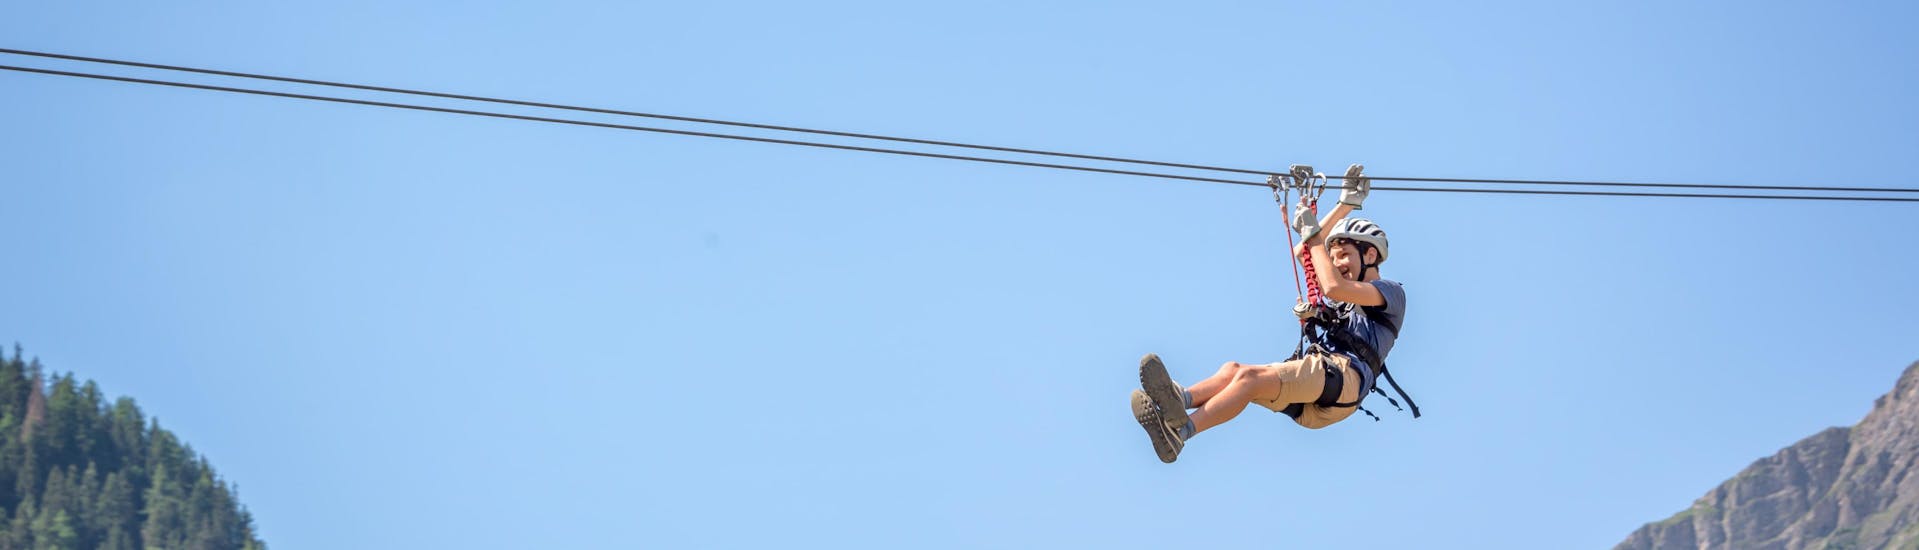 Kaapstad: Een jongeman maakt een ritje in een van de hotspots voor ziplinen.